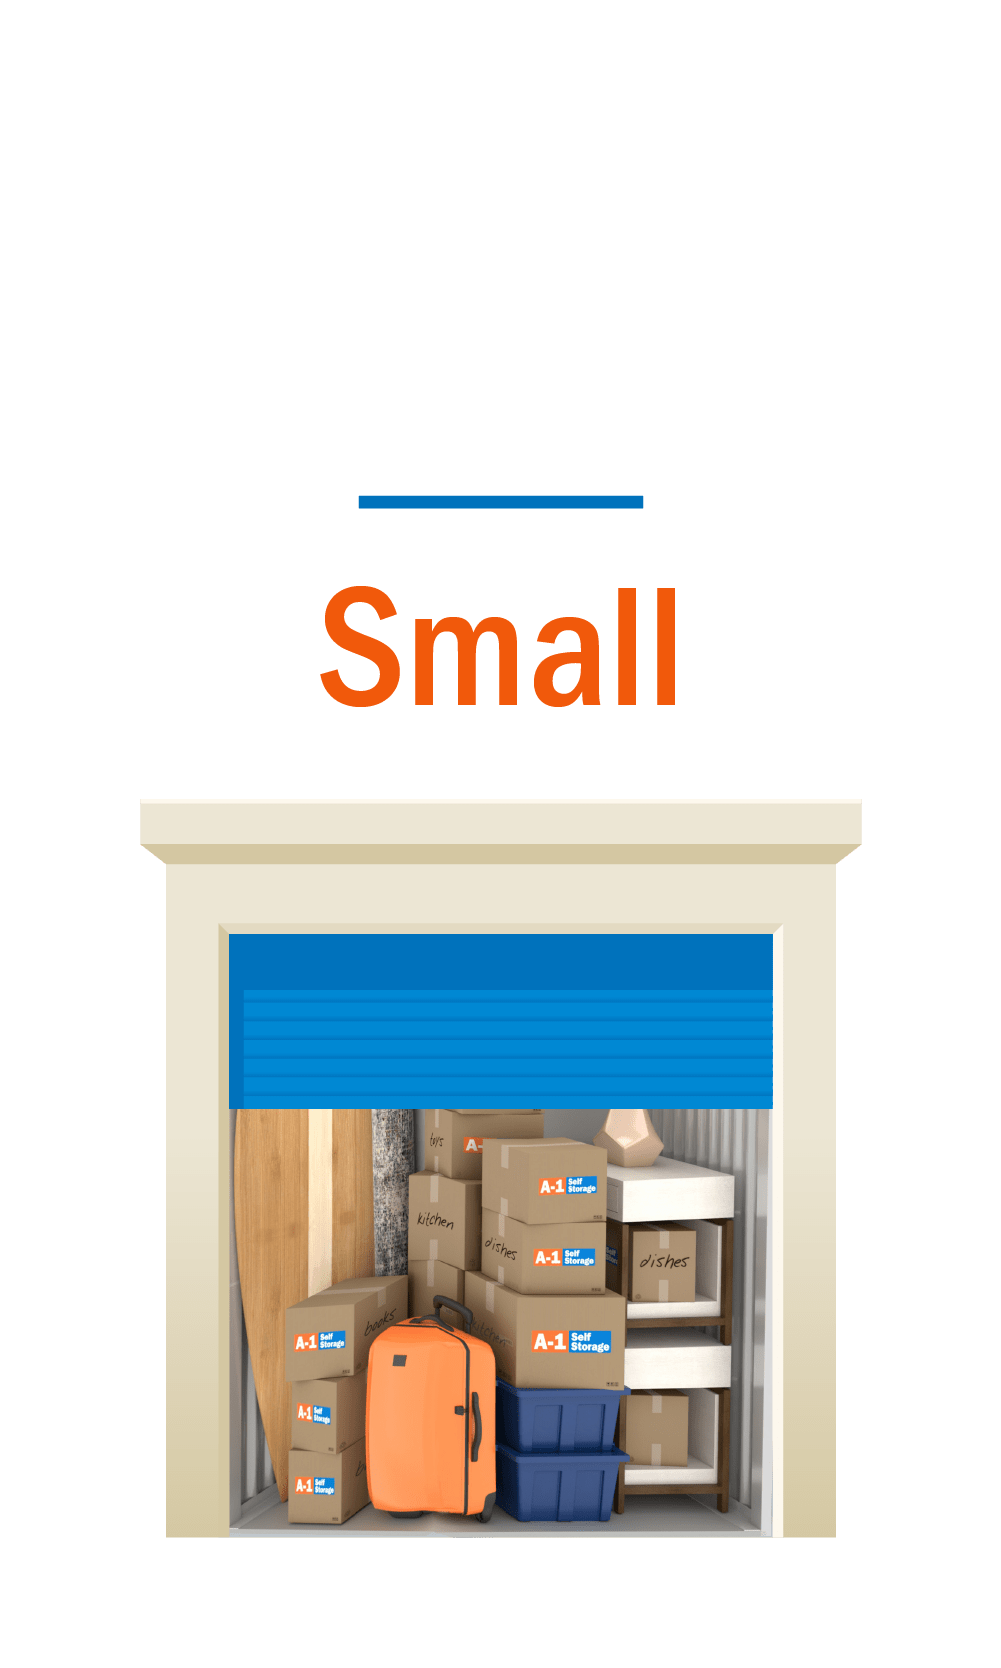 Small storage unit graphic, door open